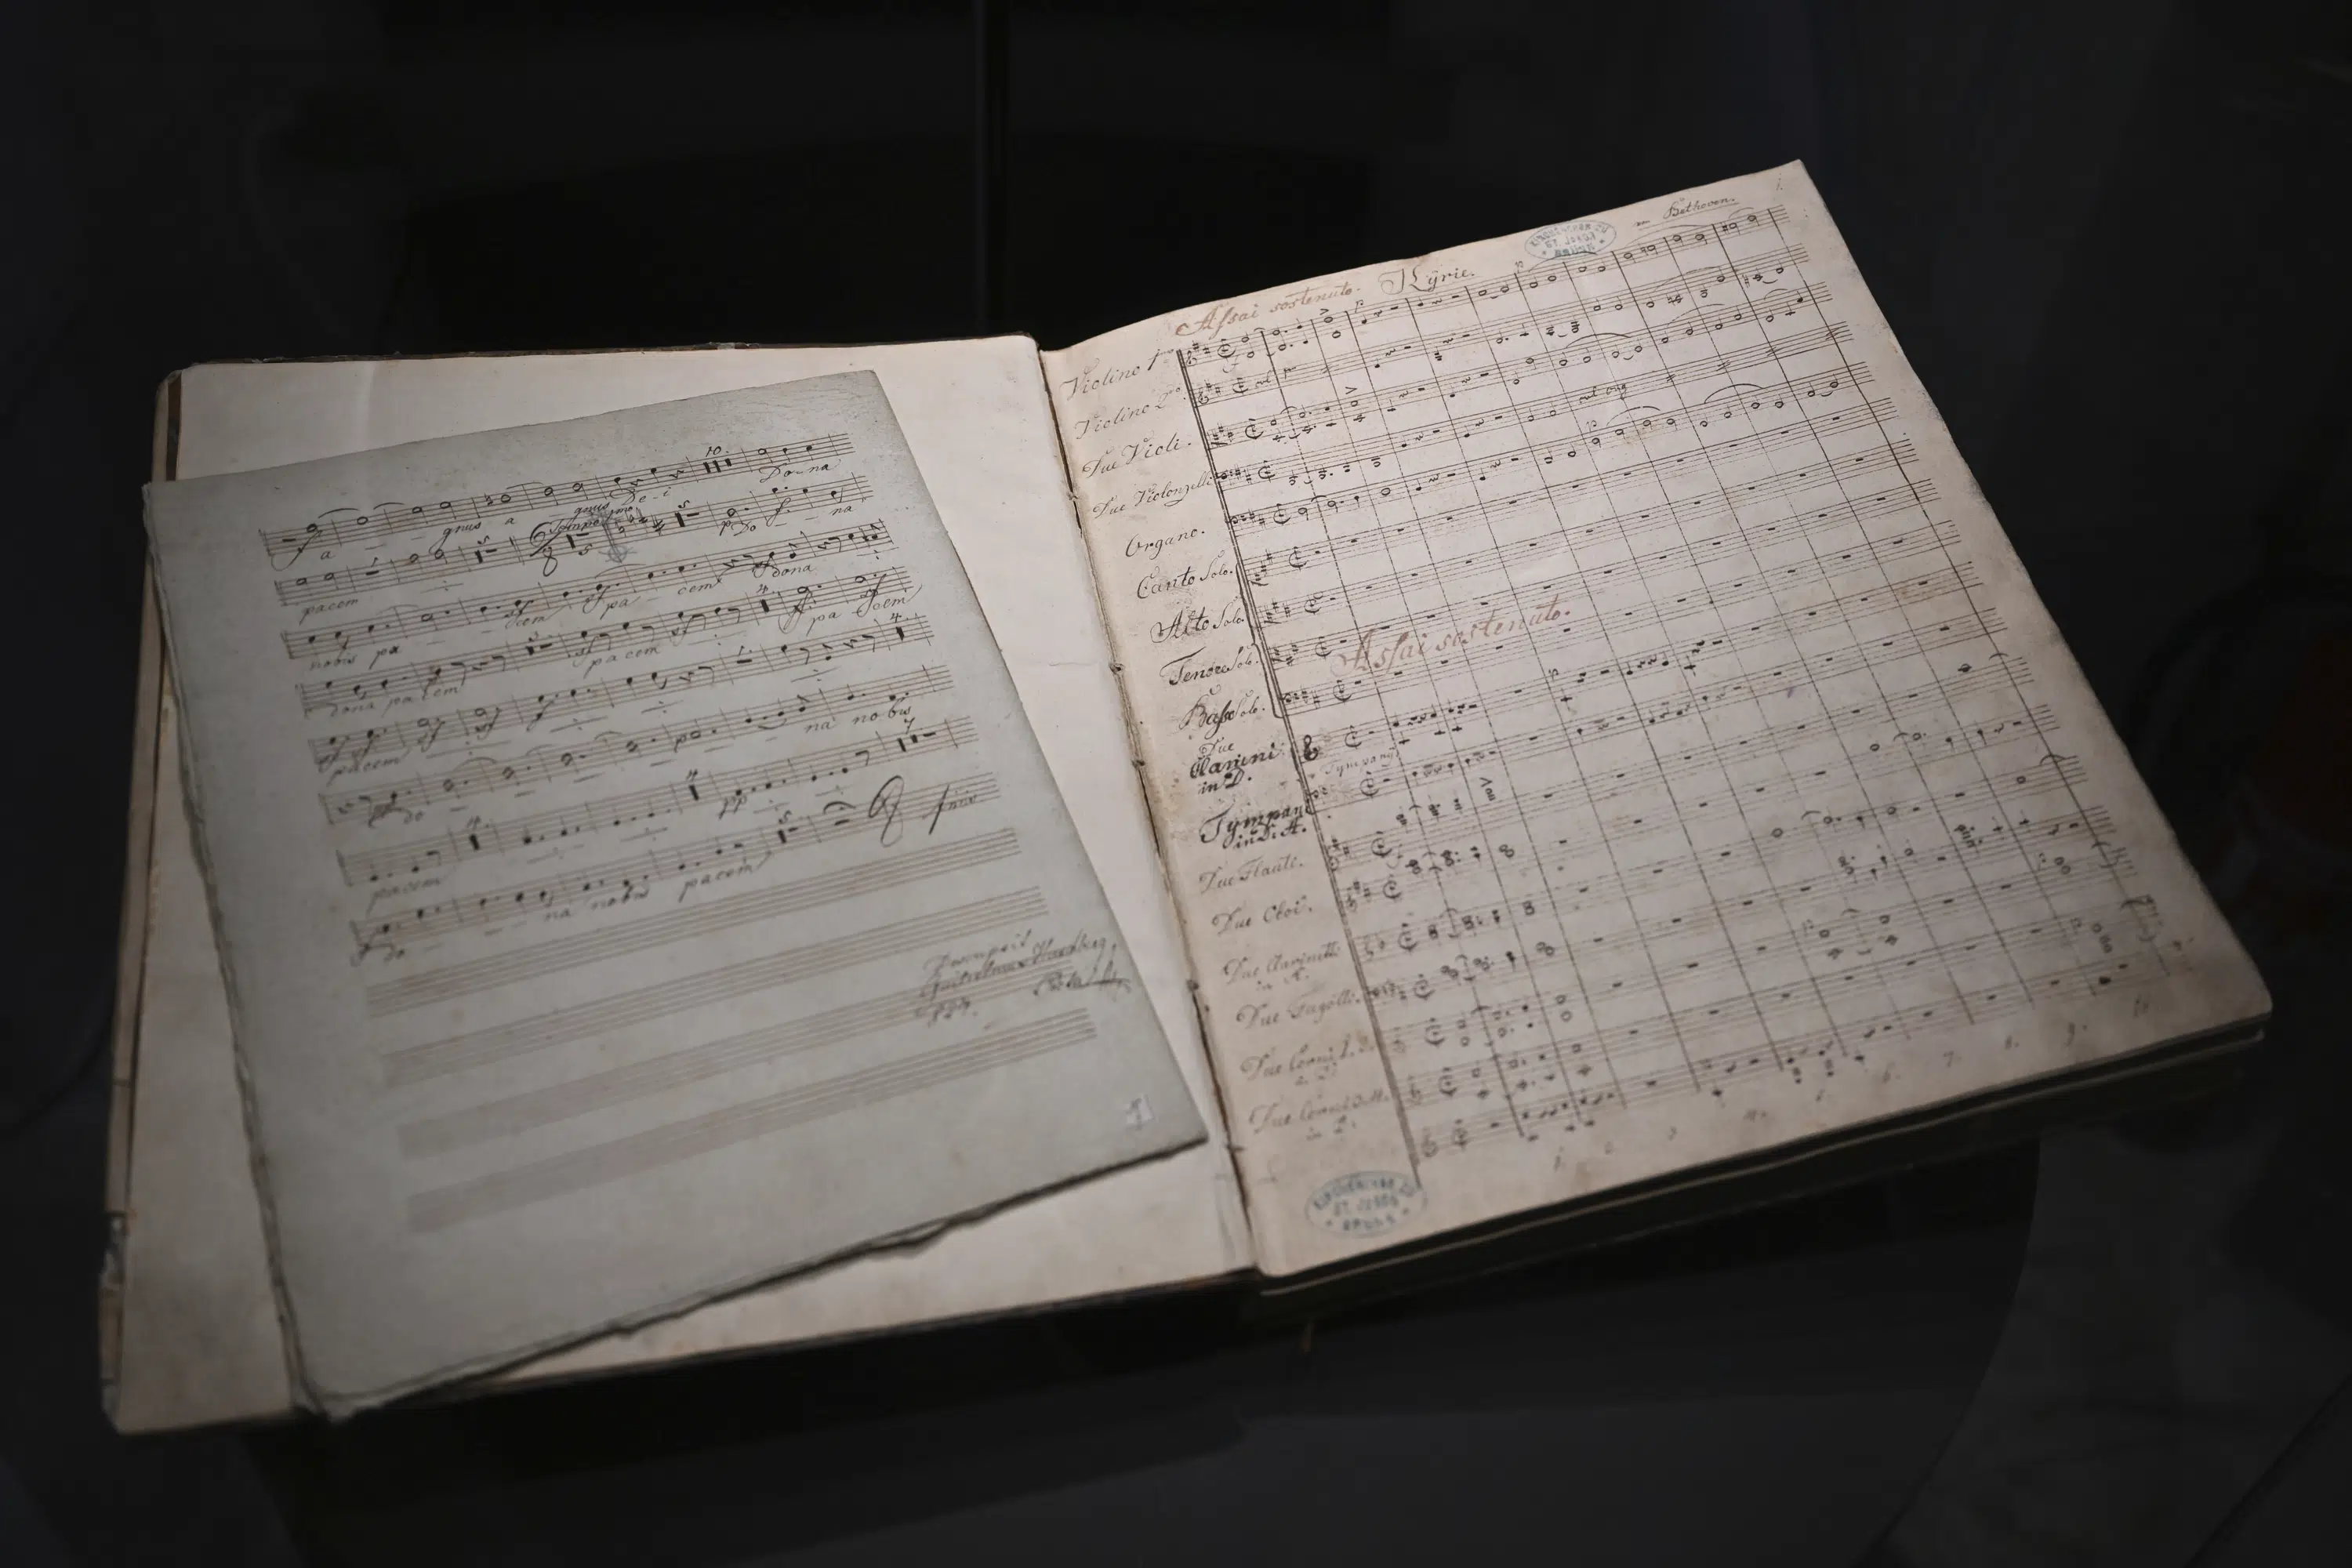 Un musée tchèque restitue la partition originale de Beethoven à ses héritiers